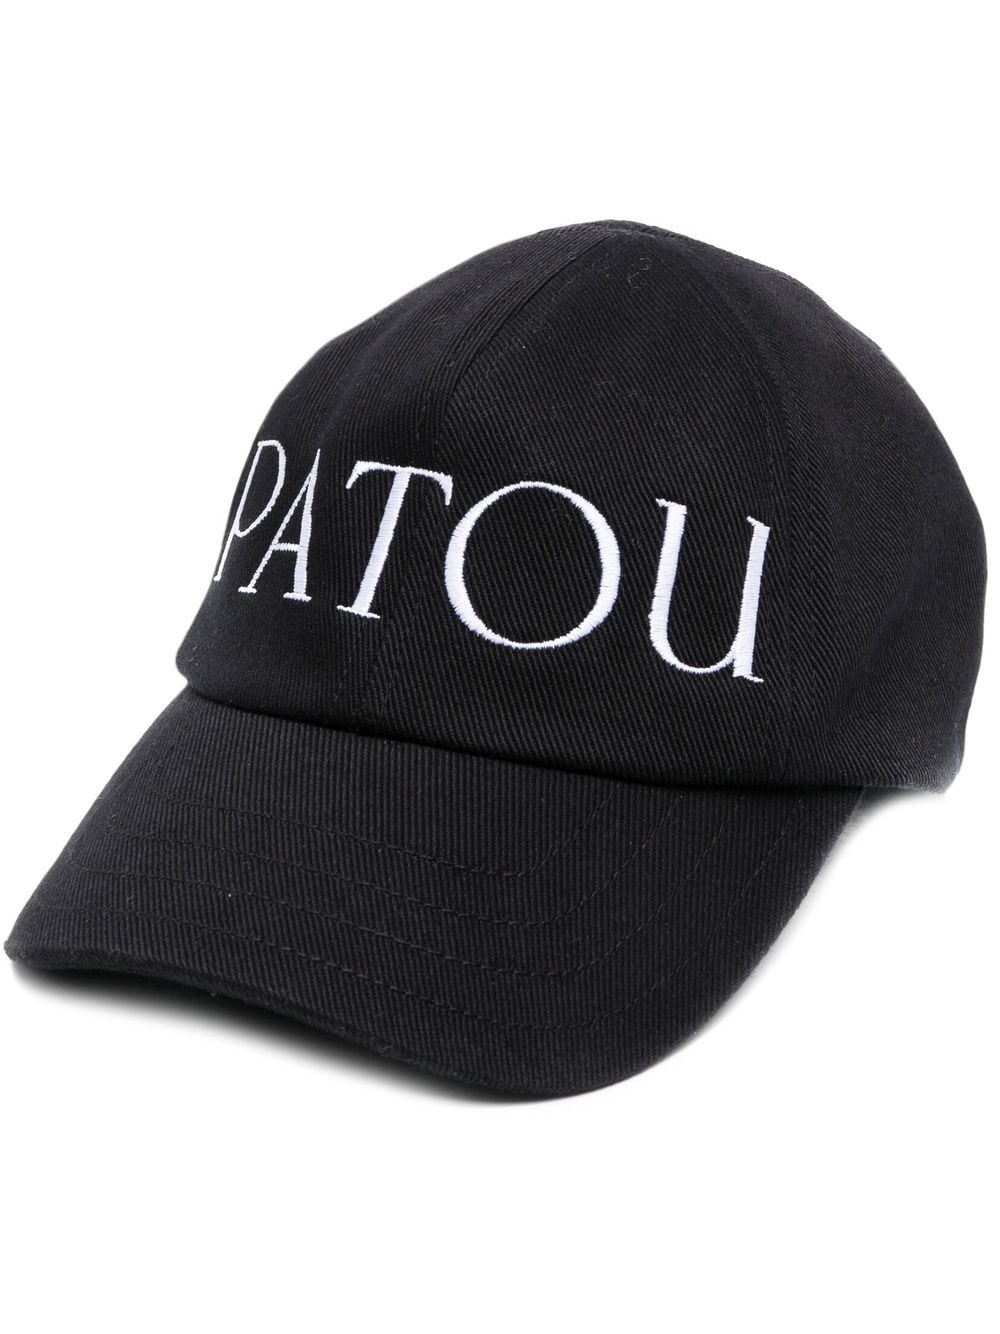 Patou PATOU- Hat With Logo